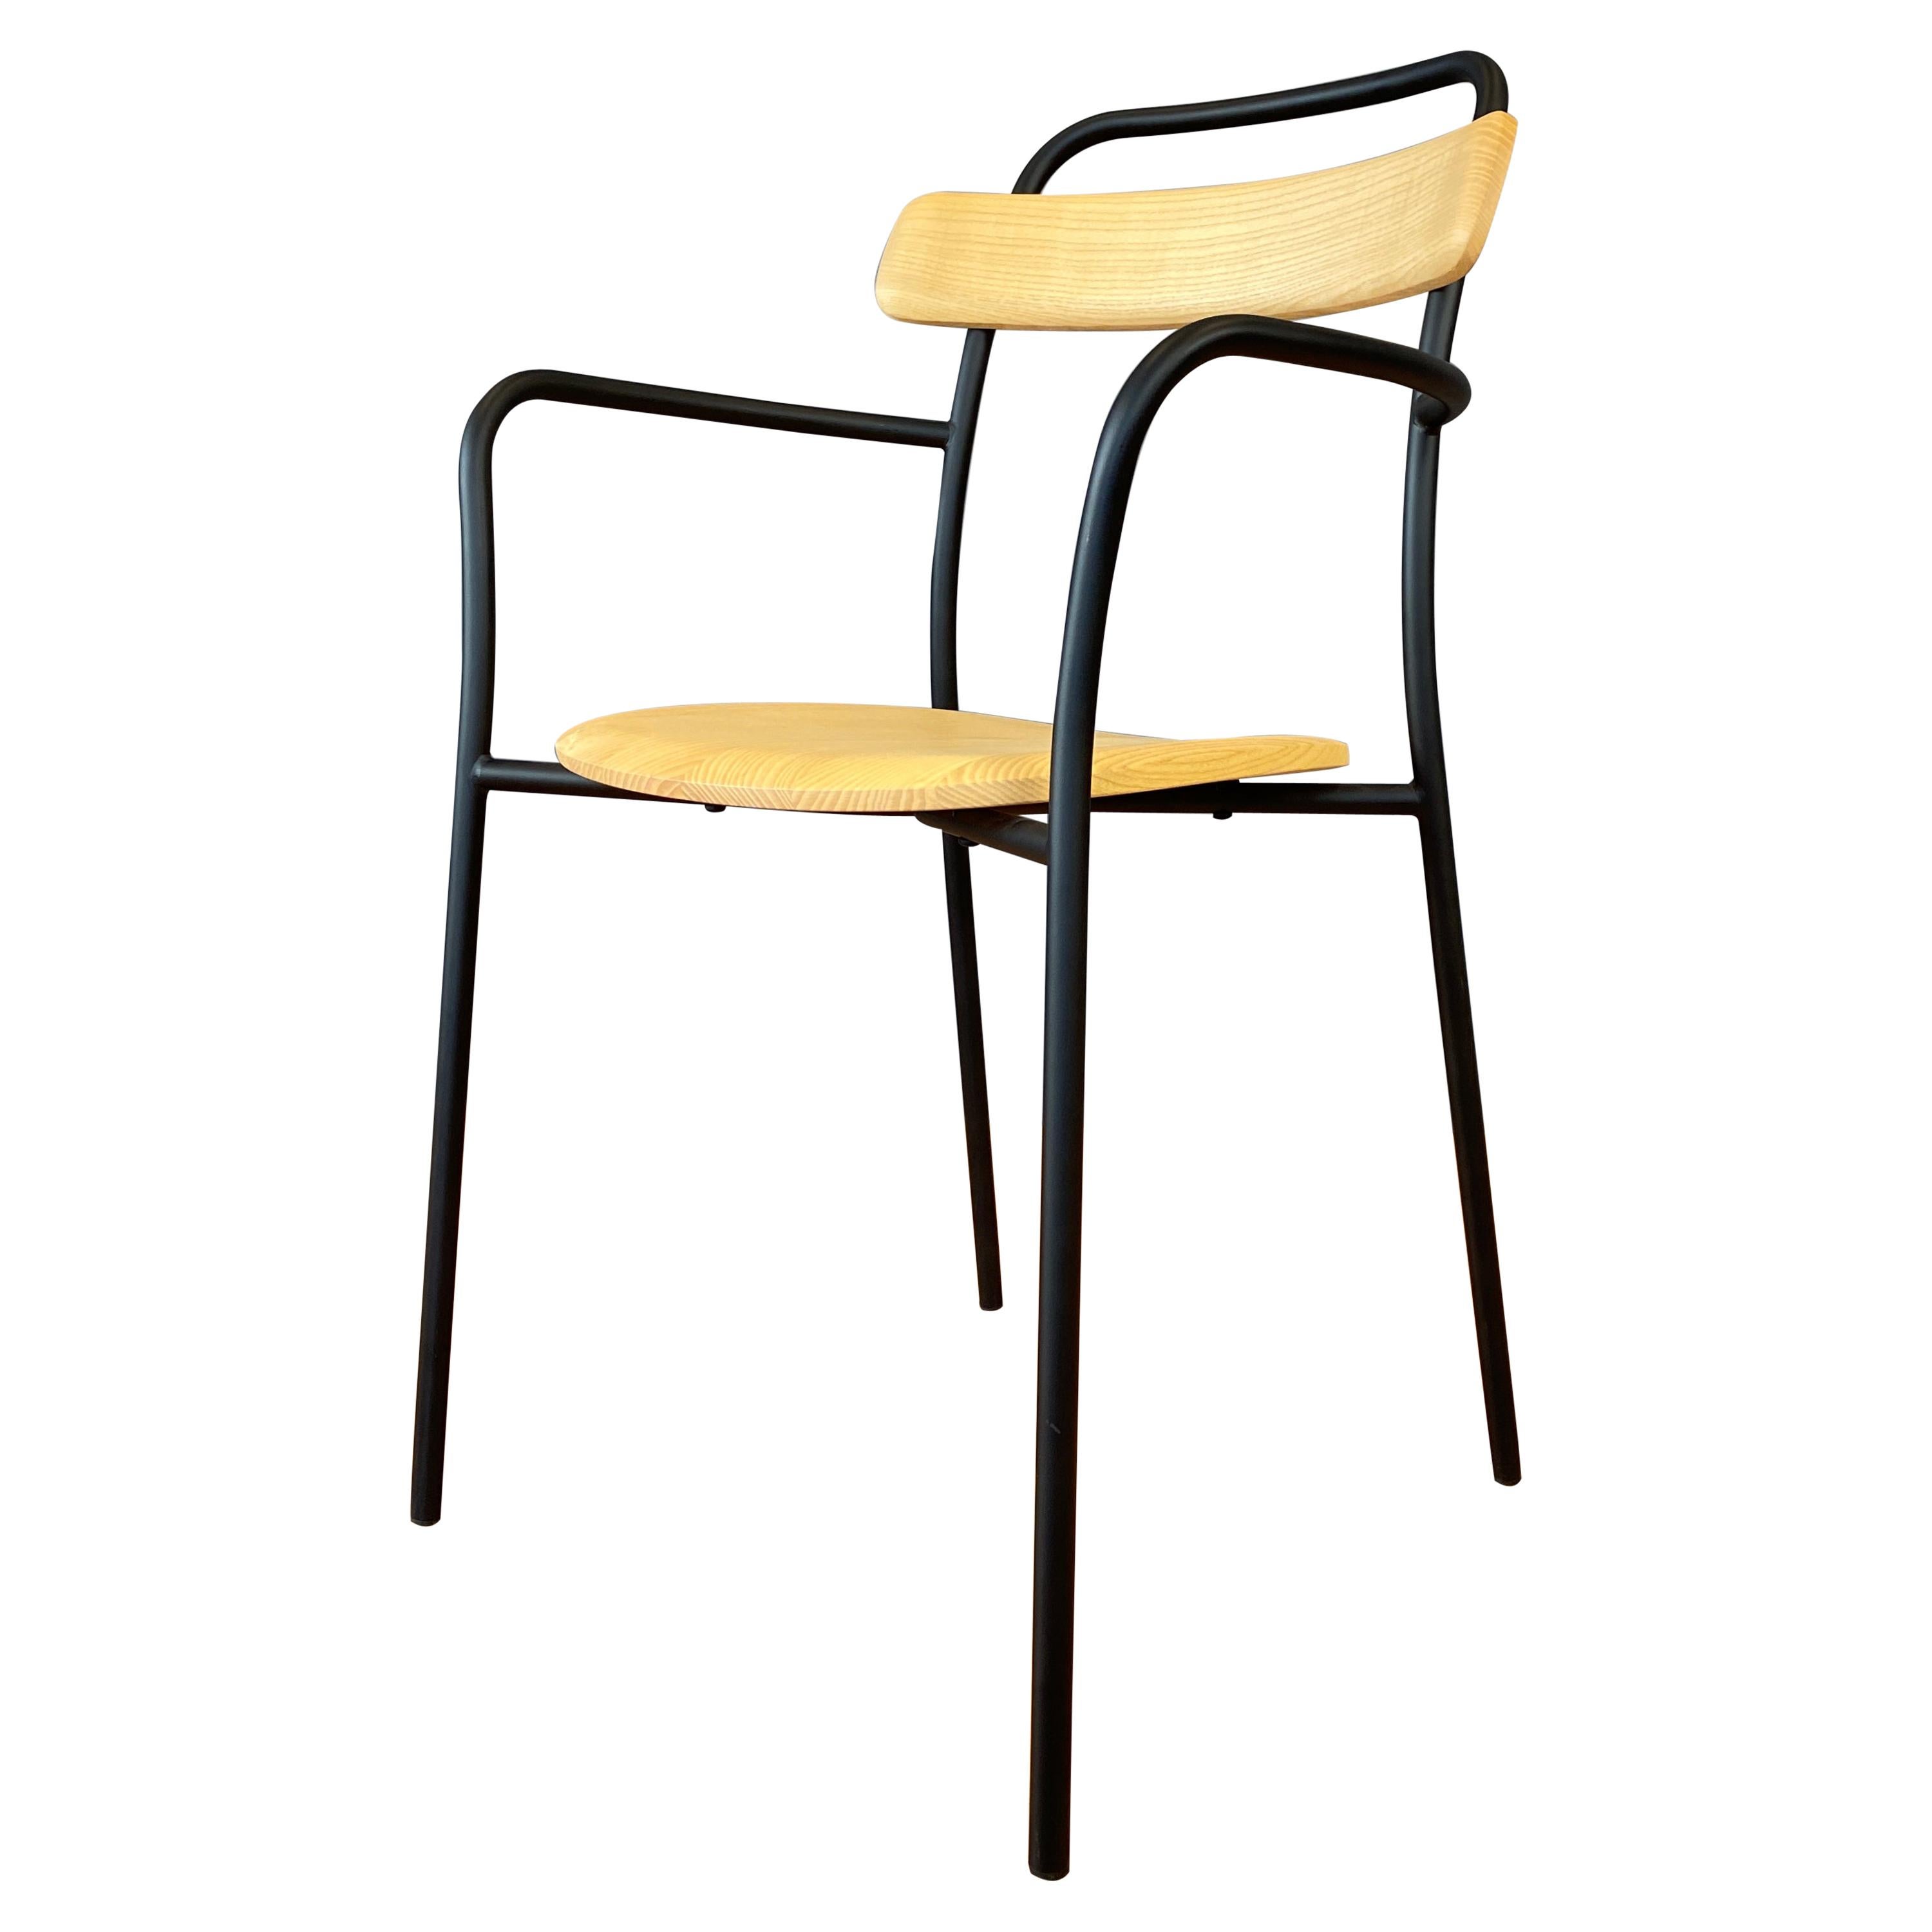 Leon Ransmeier Designed Forcina Chair for Mattiazzi